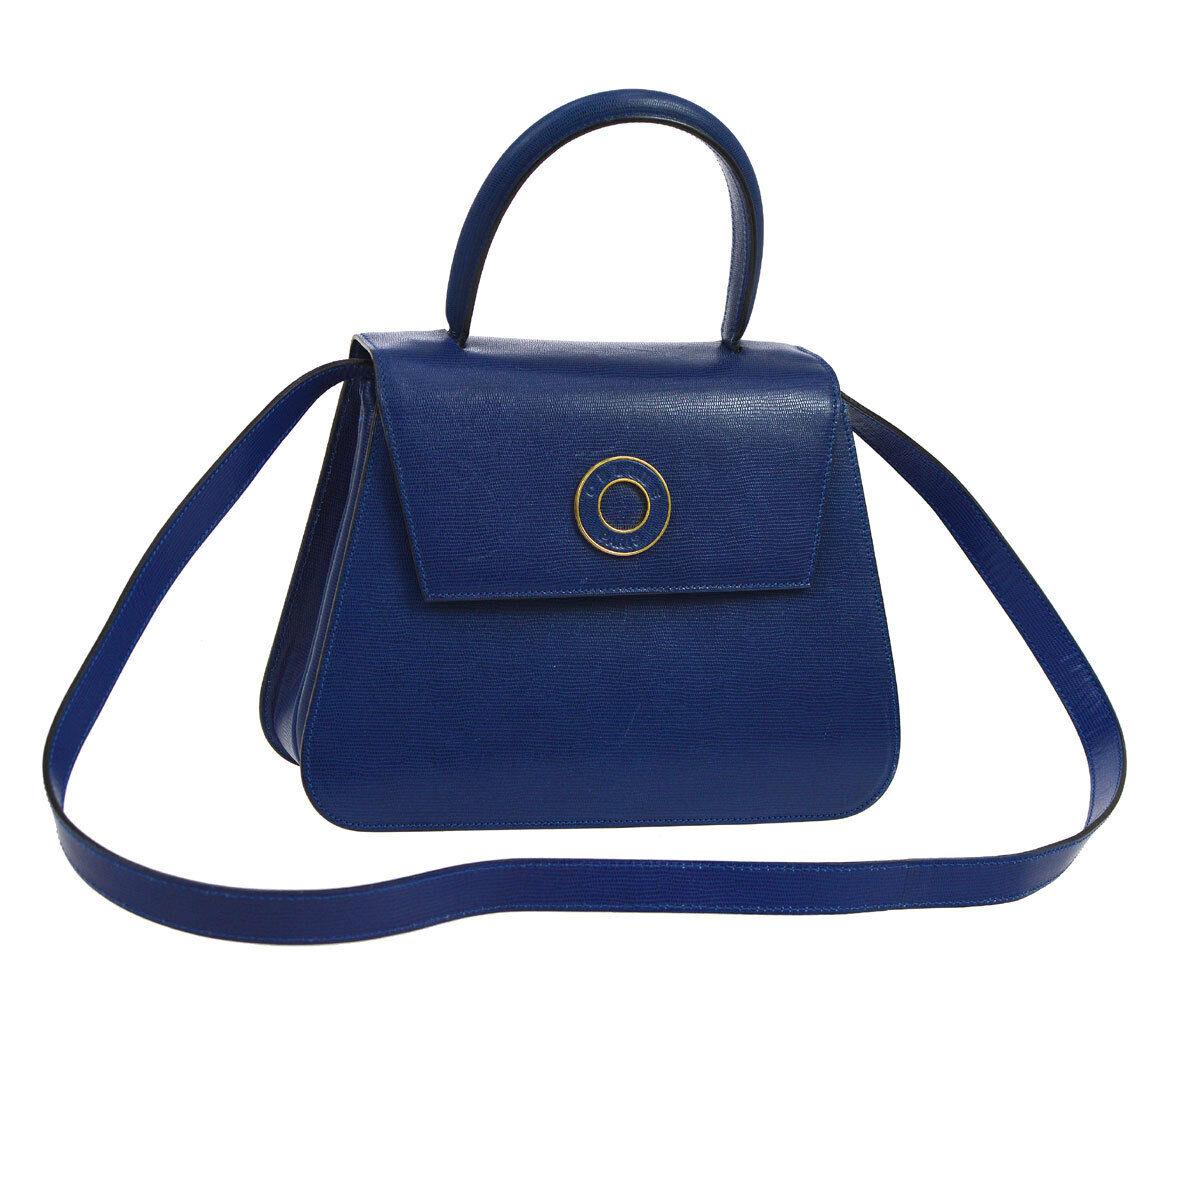 Celine Blue Leather Gold 2 in 1 Kelly Style Top Handle Satchel Shoulder Flap Bag